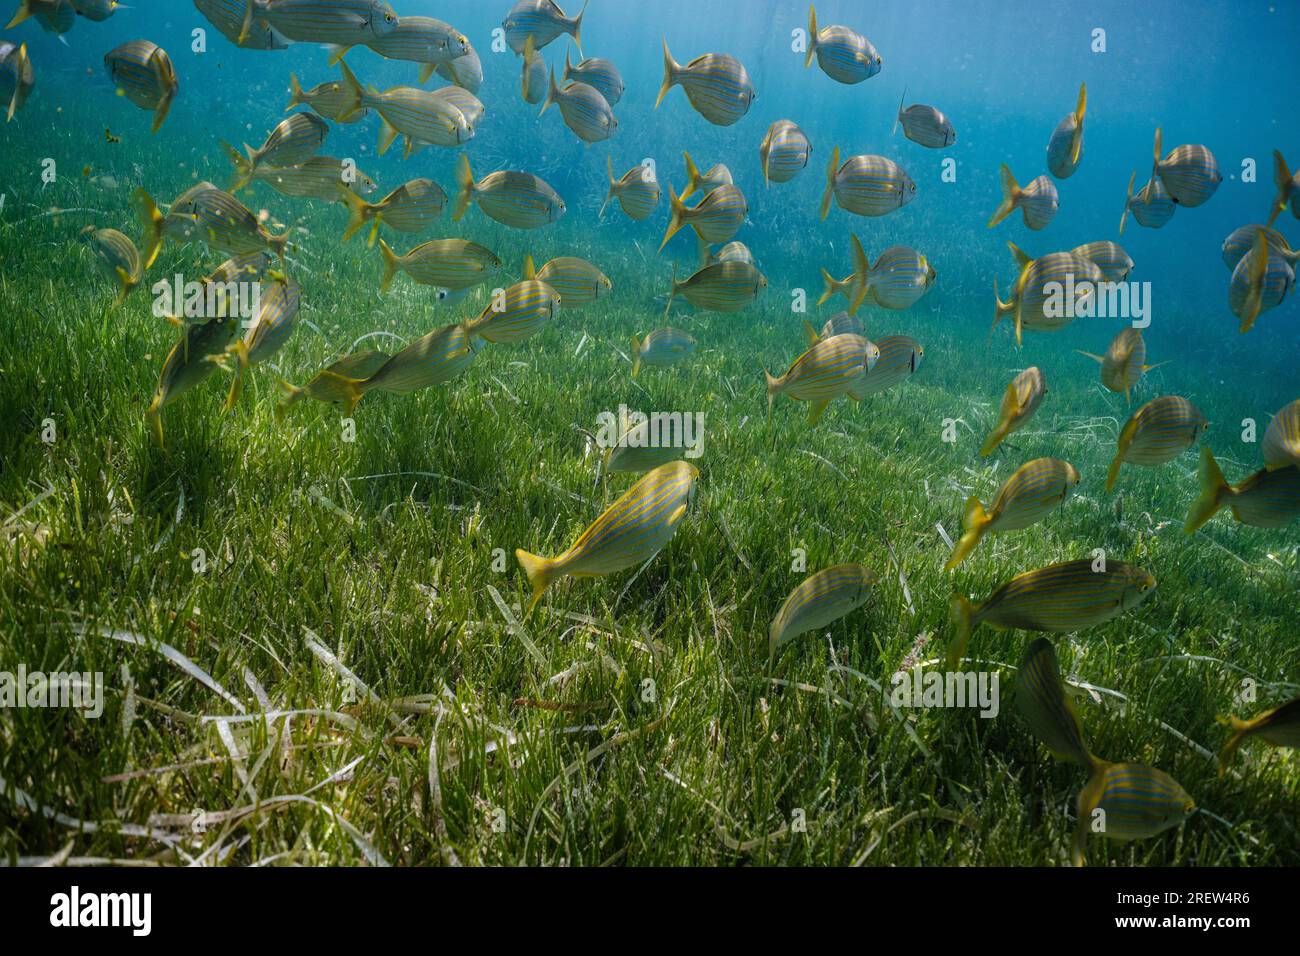 Exotische Fische Salema porgy schwimmen tagsüber in sauberem blauem Meerwasser in der Nähe von Korallenriffen Stockfoto